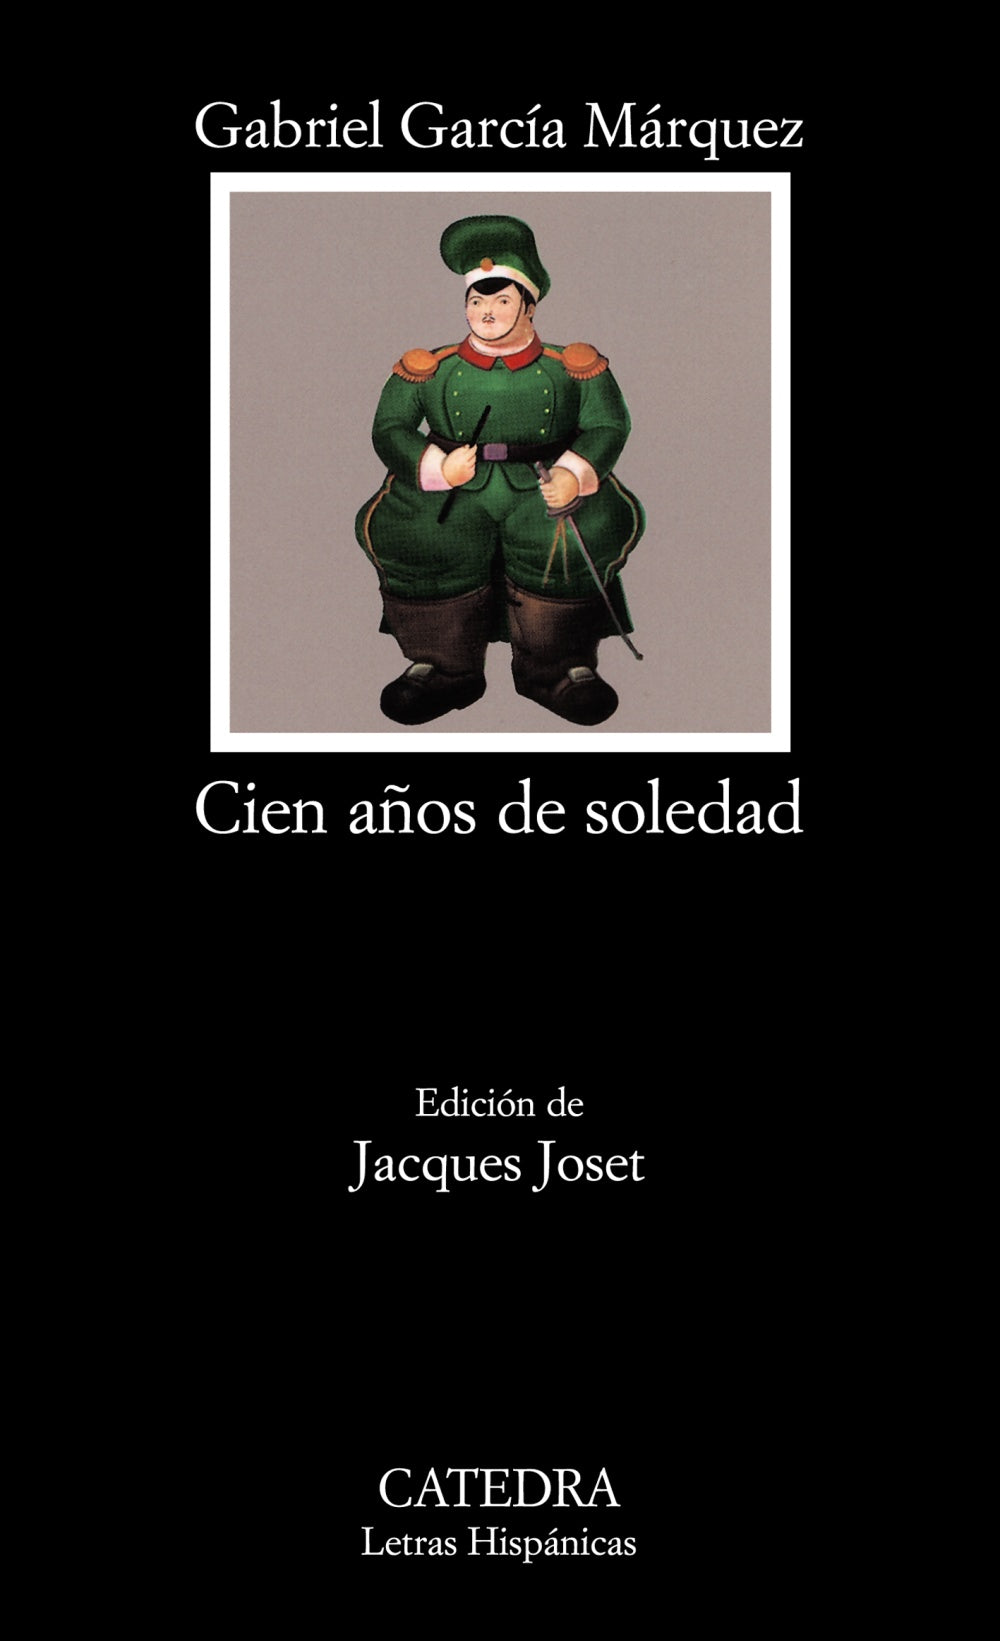 CIEN AÑOS DE SOLEDAD - Gabriel García Márquez